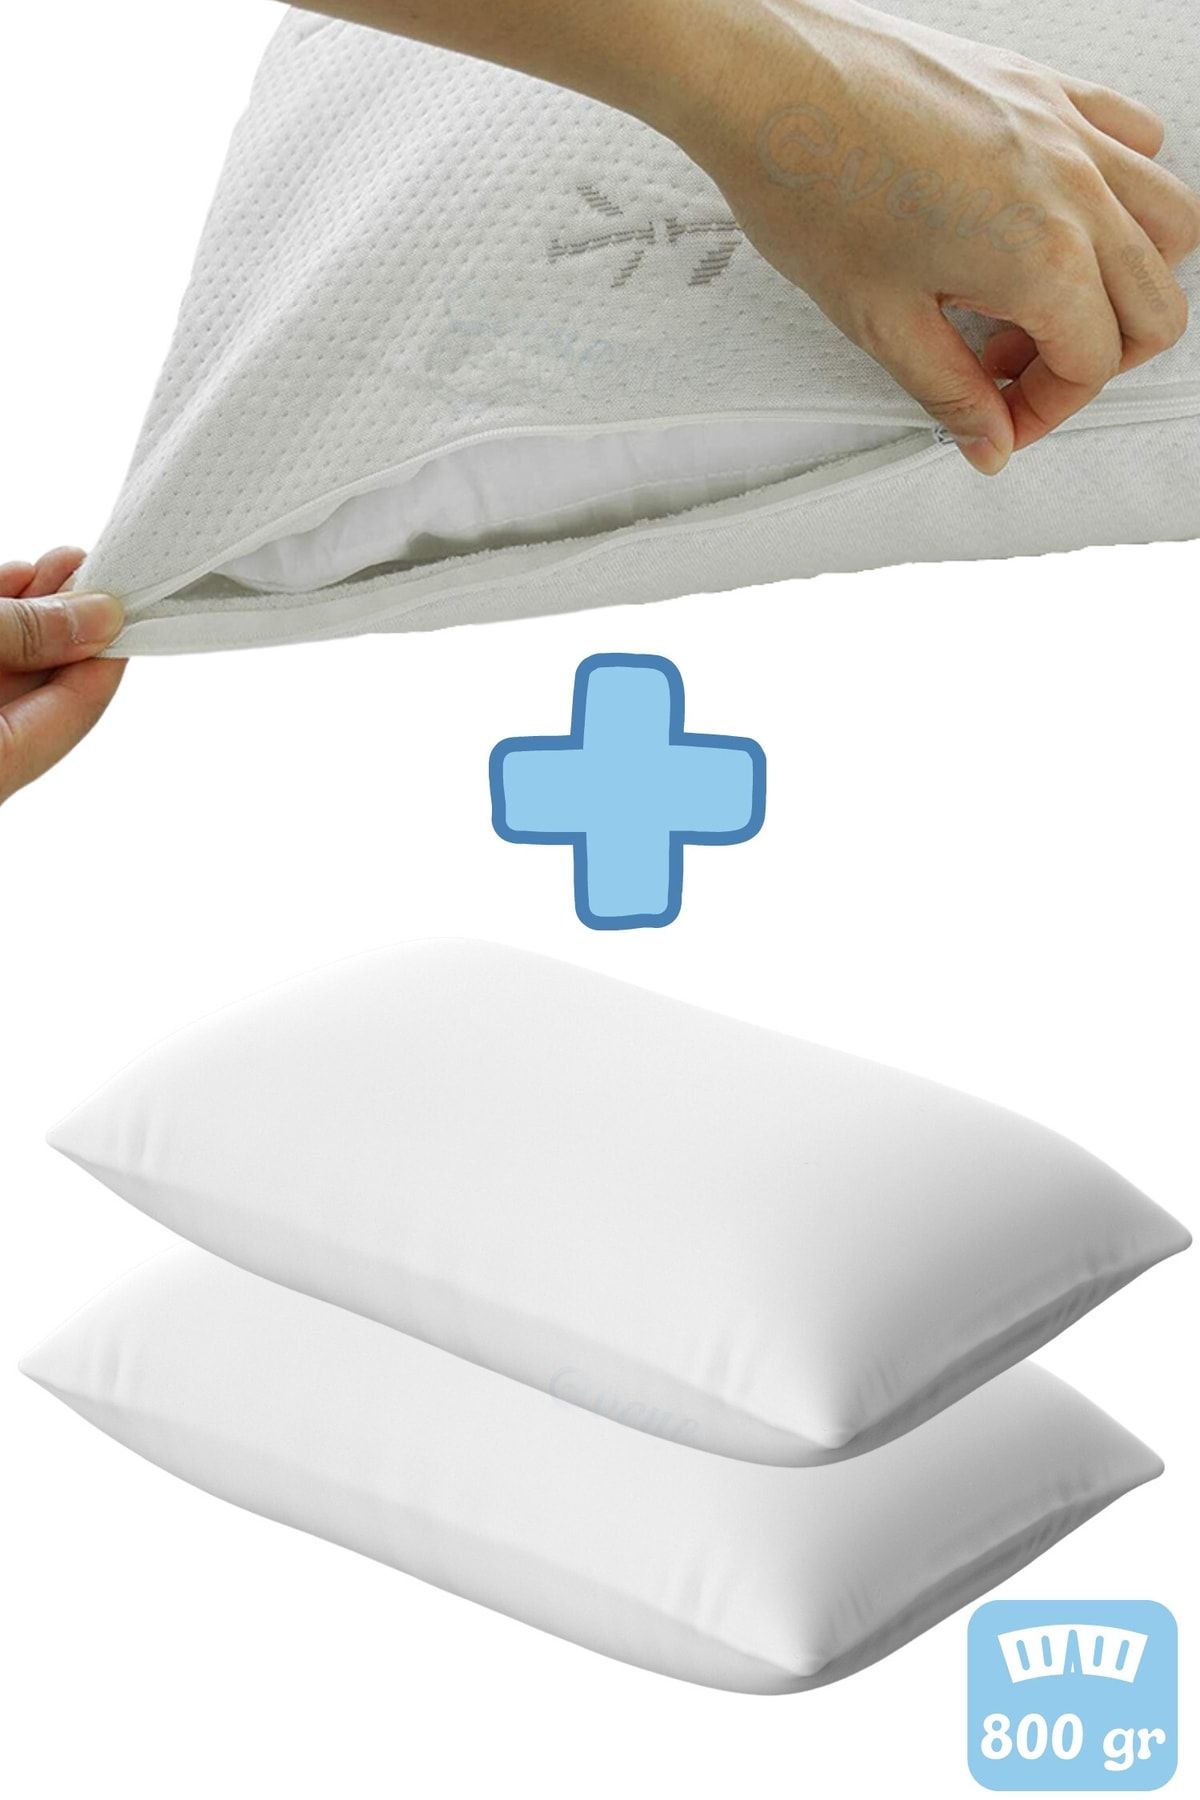 Evene Yastık Boncuk Elyaf Antibakteriyel Uyku Yastığı Pamuklu 800 Gr + Pamuklu Fermuarlı Kılıf 2 Adet